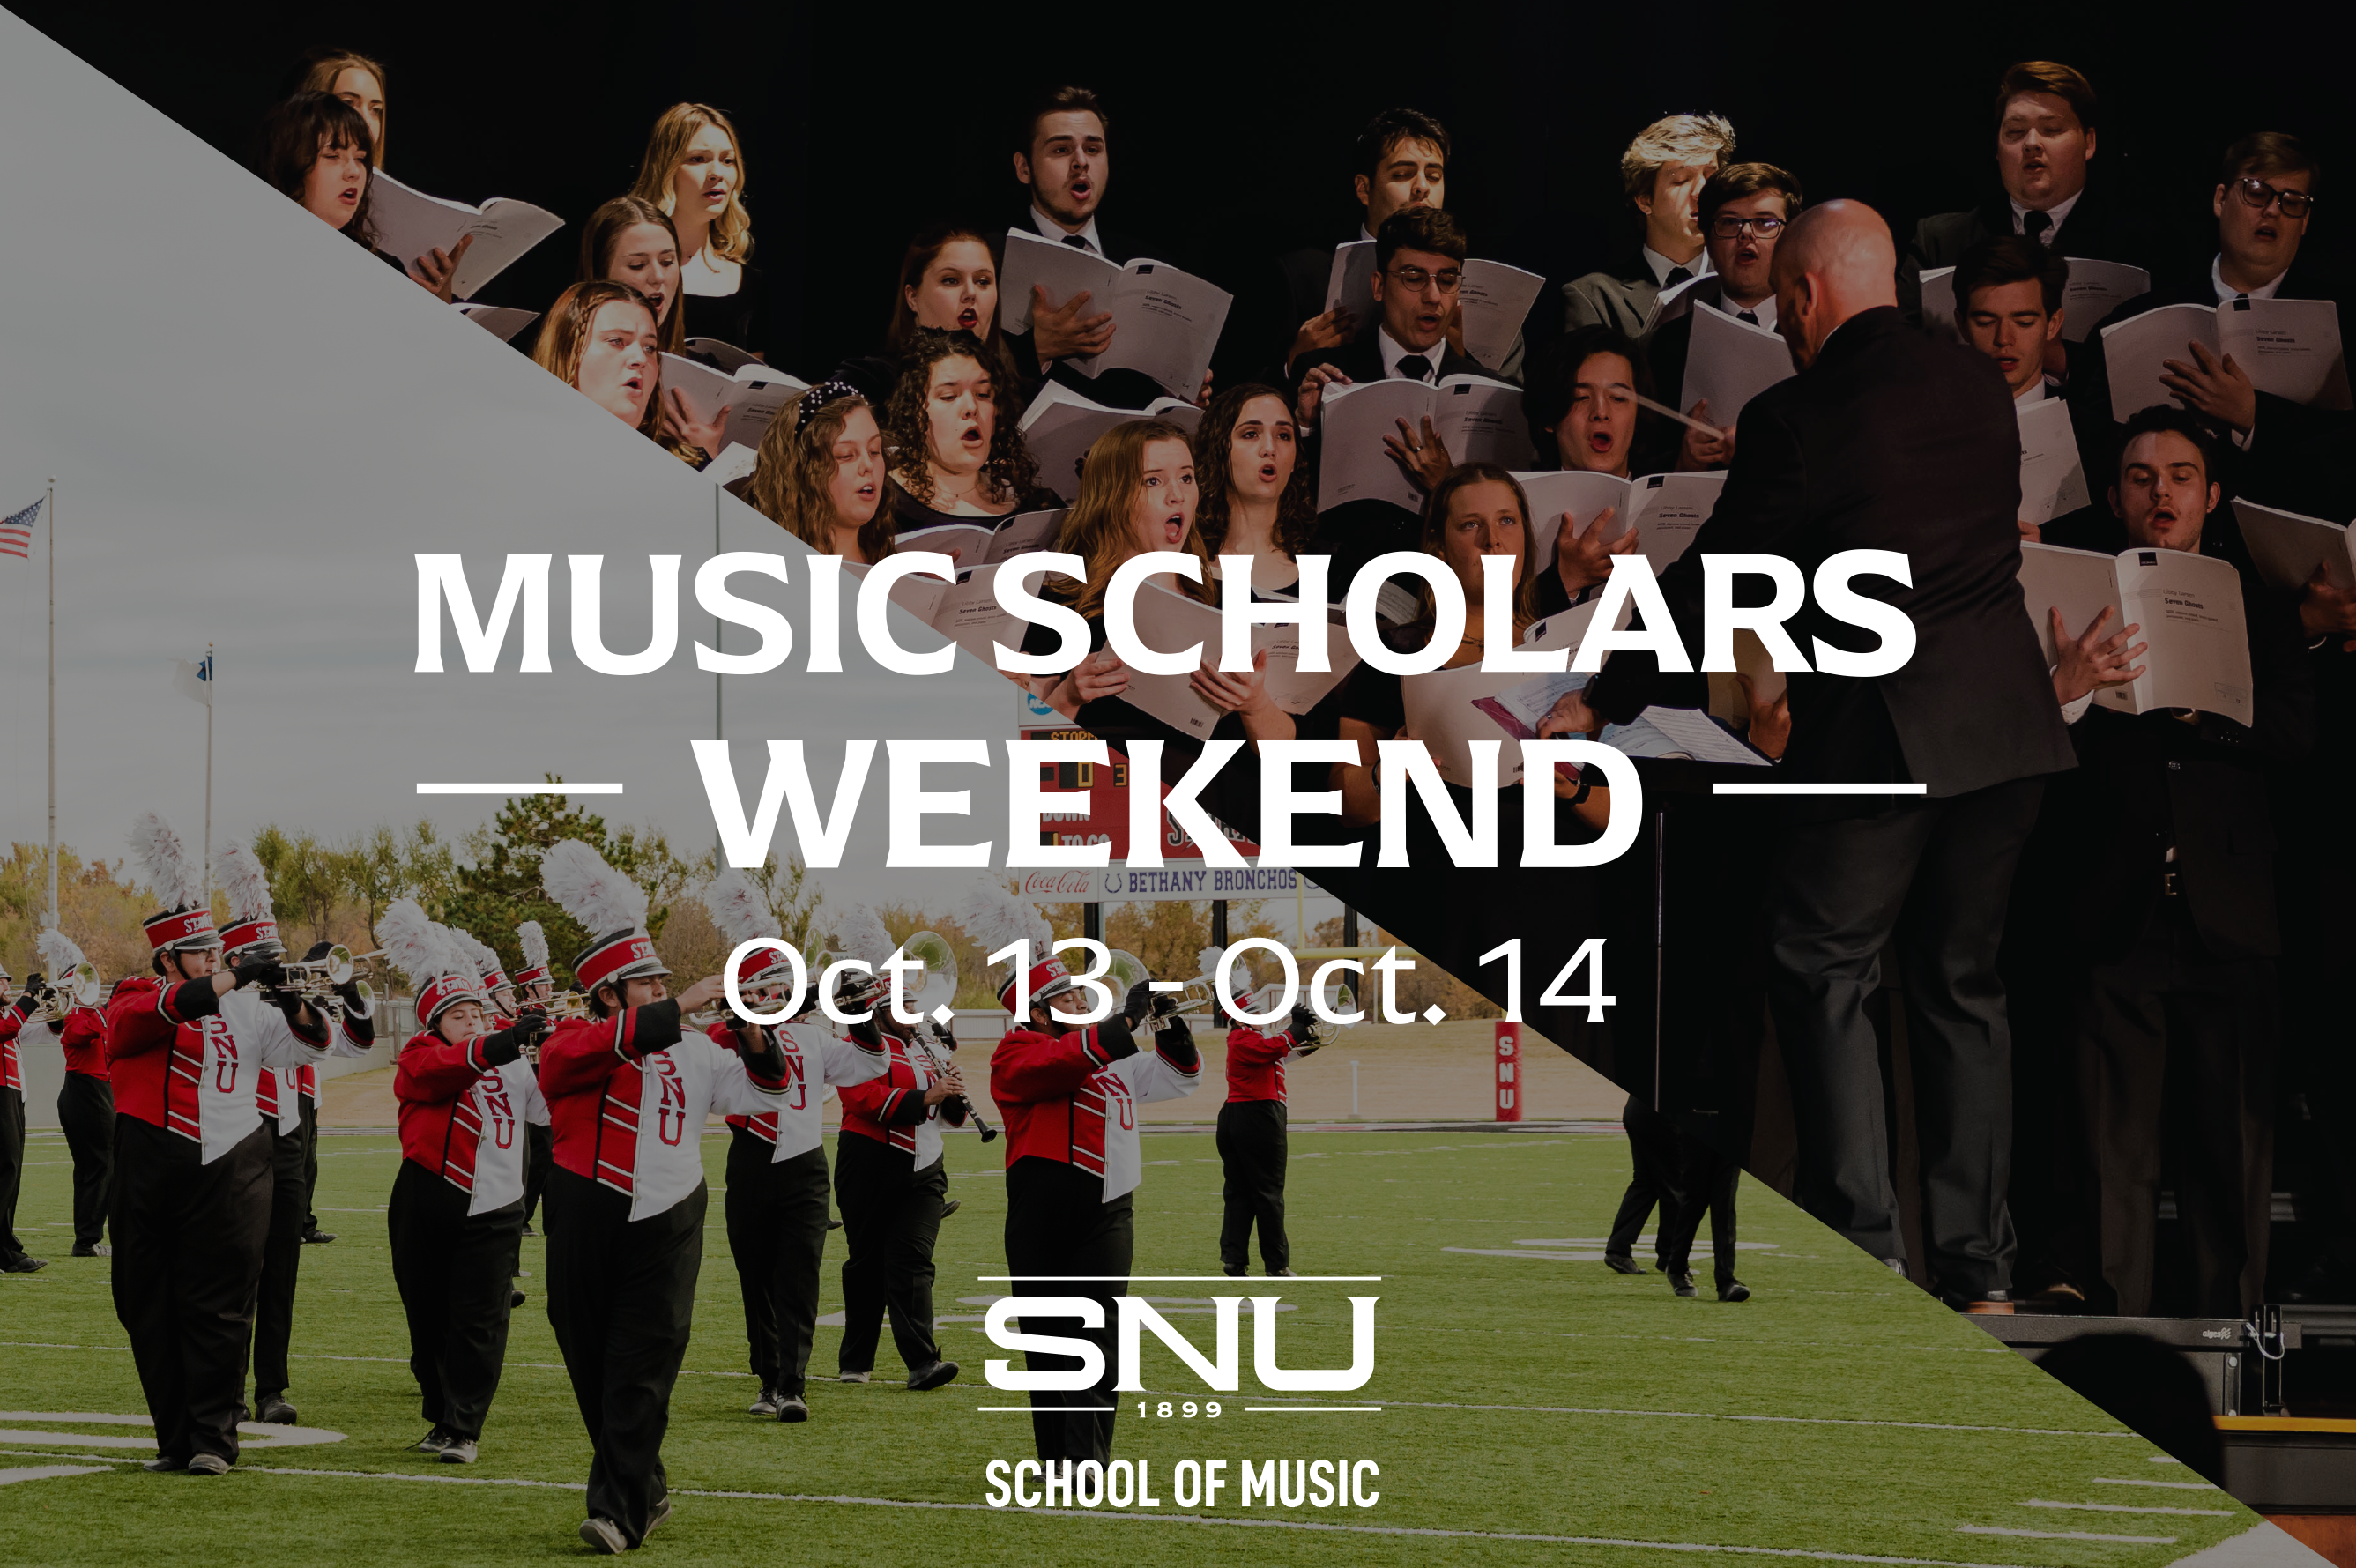 Music Scholars weekend Oct 13 - 14